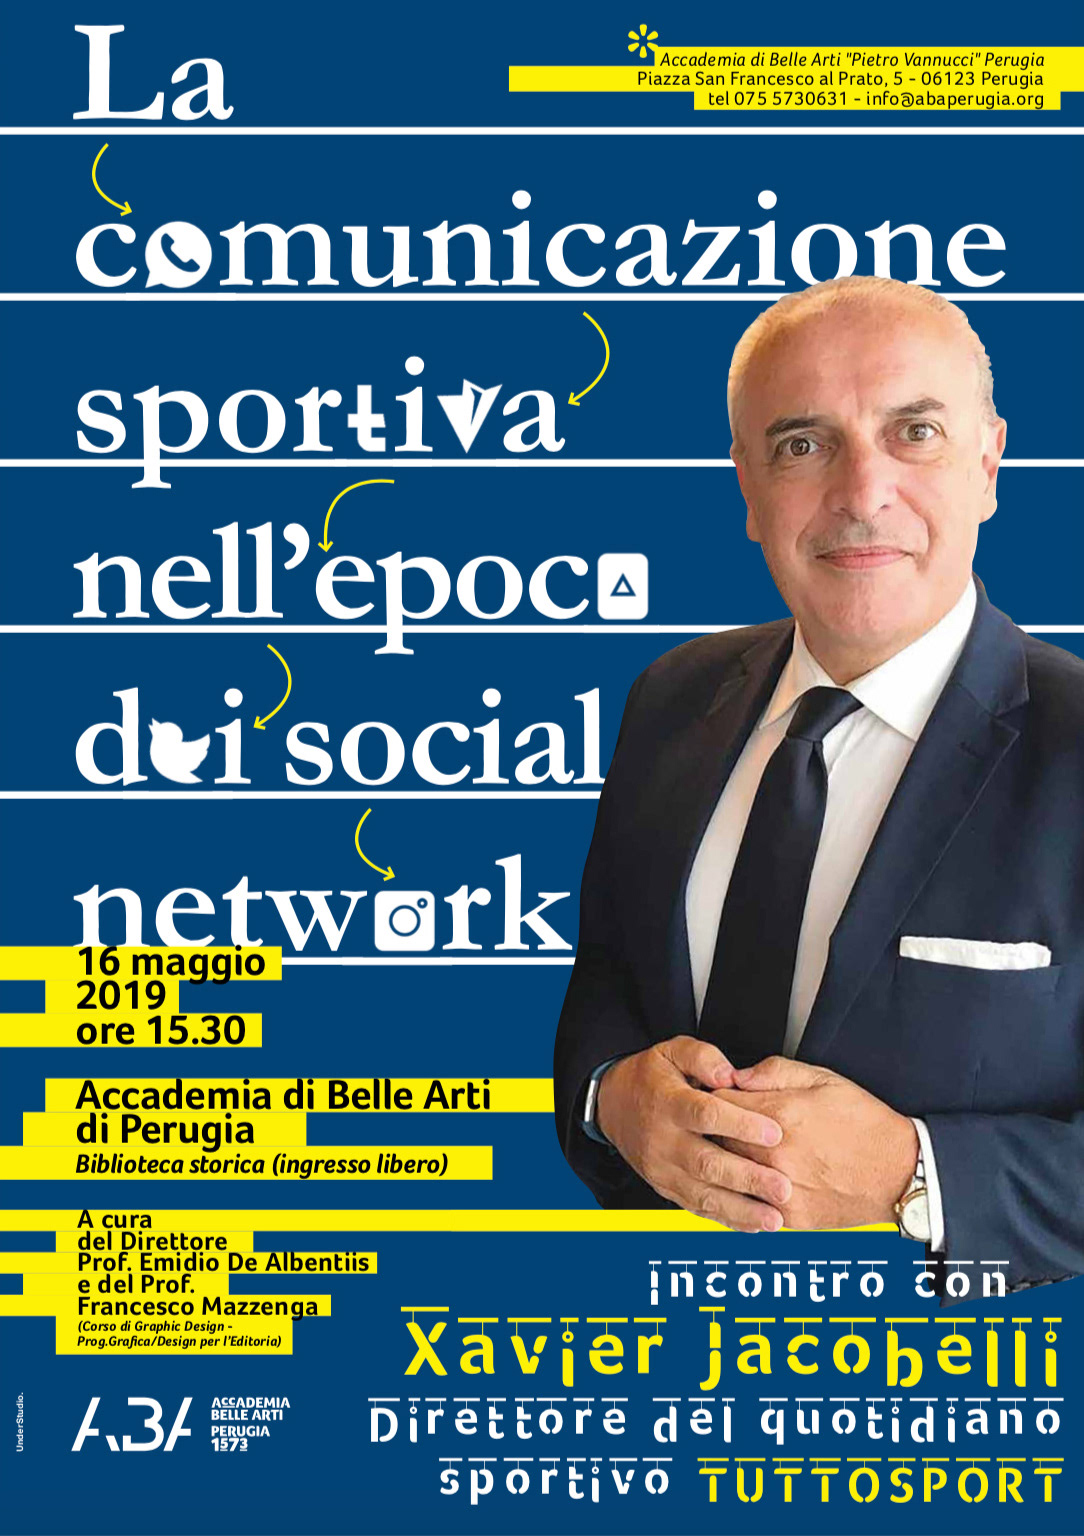 talk Xavier Jacobelli Videoconferenza Accademia Belle Arti perugia social network La comunicazione sportiva Emidio De Albentiis